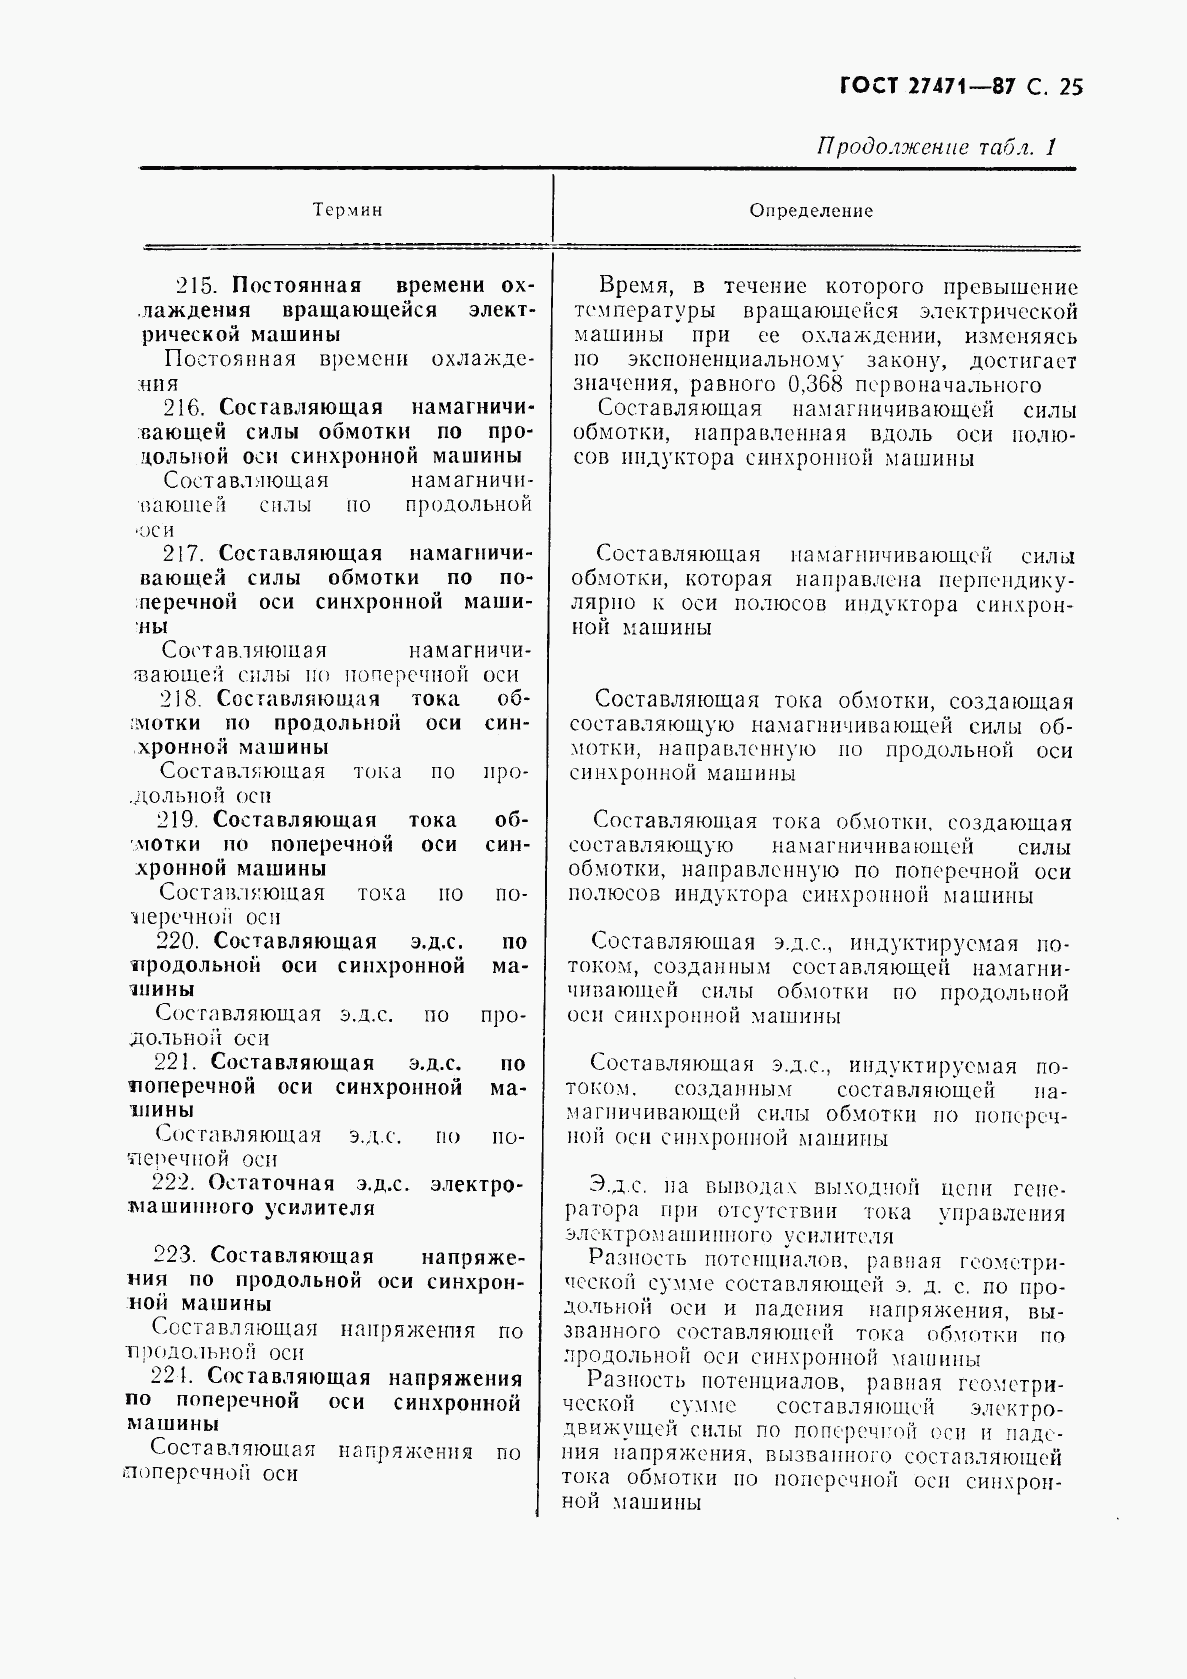 ГОСТ 27471-87, страница 26